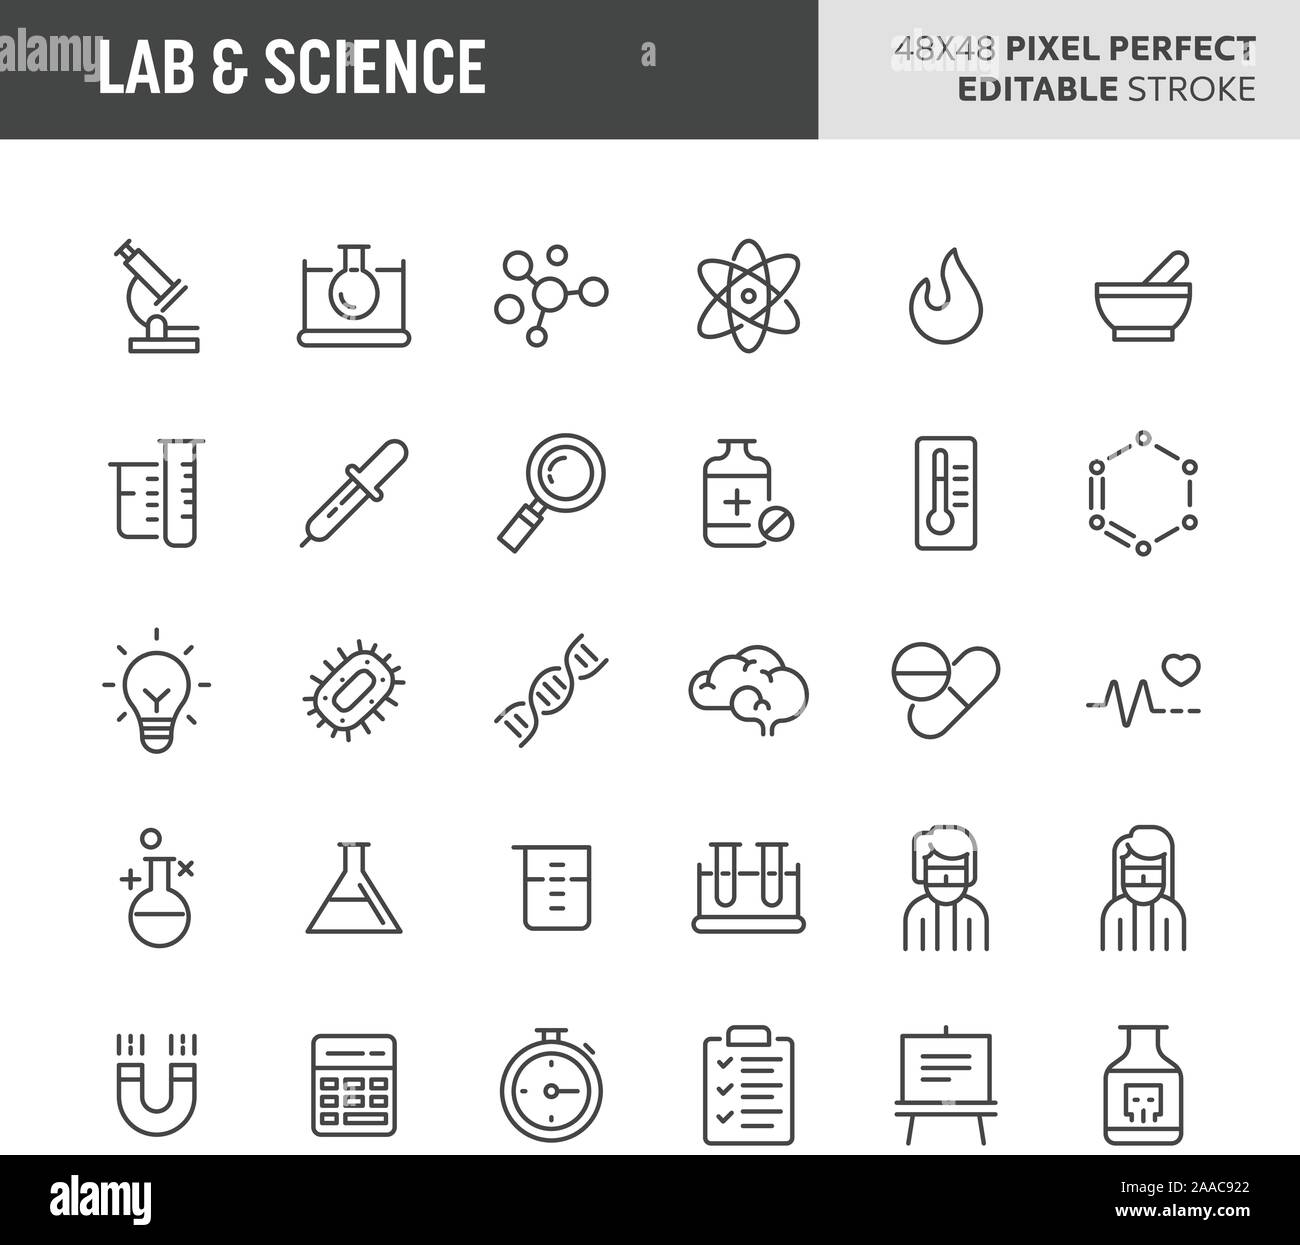 30 linea sottile icone associate con lab e la scienza. Simboli quali attrezzature di laboratorio, la ricerca e gli esperimenti sono incluse in questa serie. 48x48 pix Illustrazione Vettoriale